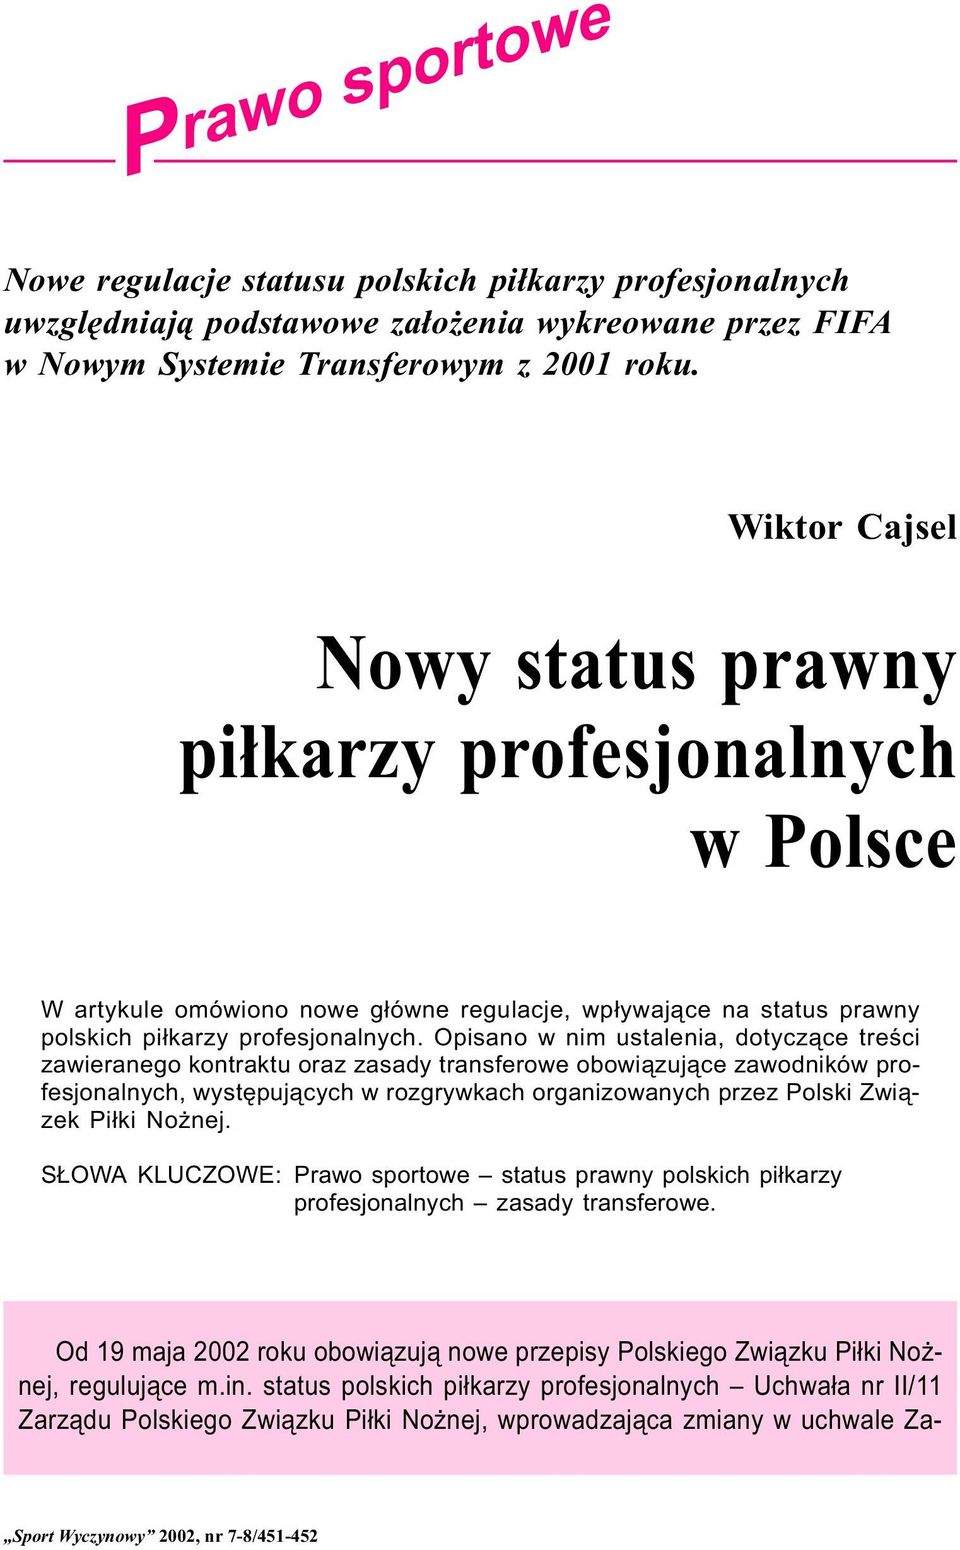 Opisano w nim ustalenia, dotycz¹ce treœci zawieranego kontraktu oraz zasady transferowe obowi¹zuj¹ce zawodników profesjonalnych, wystêpuj¹cych w rozgrywkach organizowanych przez Polski Zwi¹zek Pi³ki